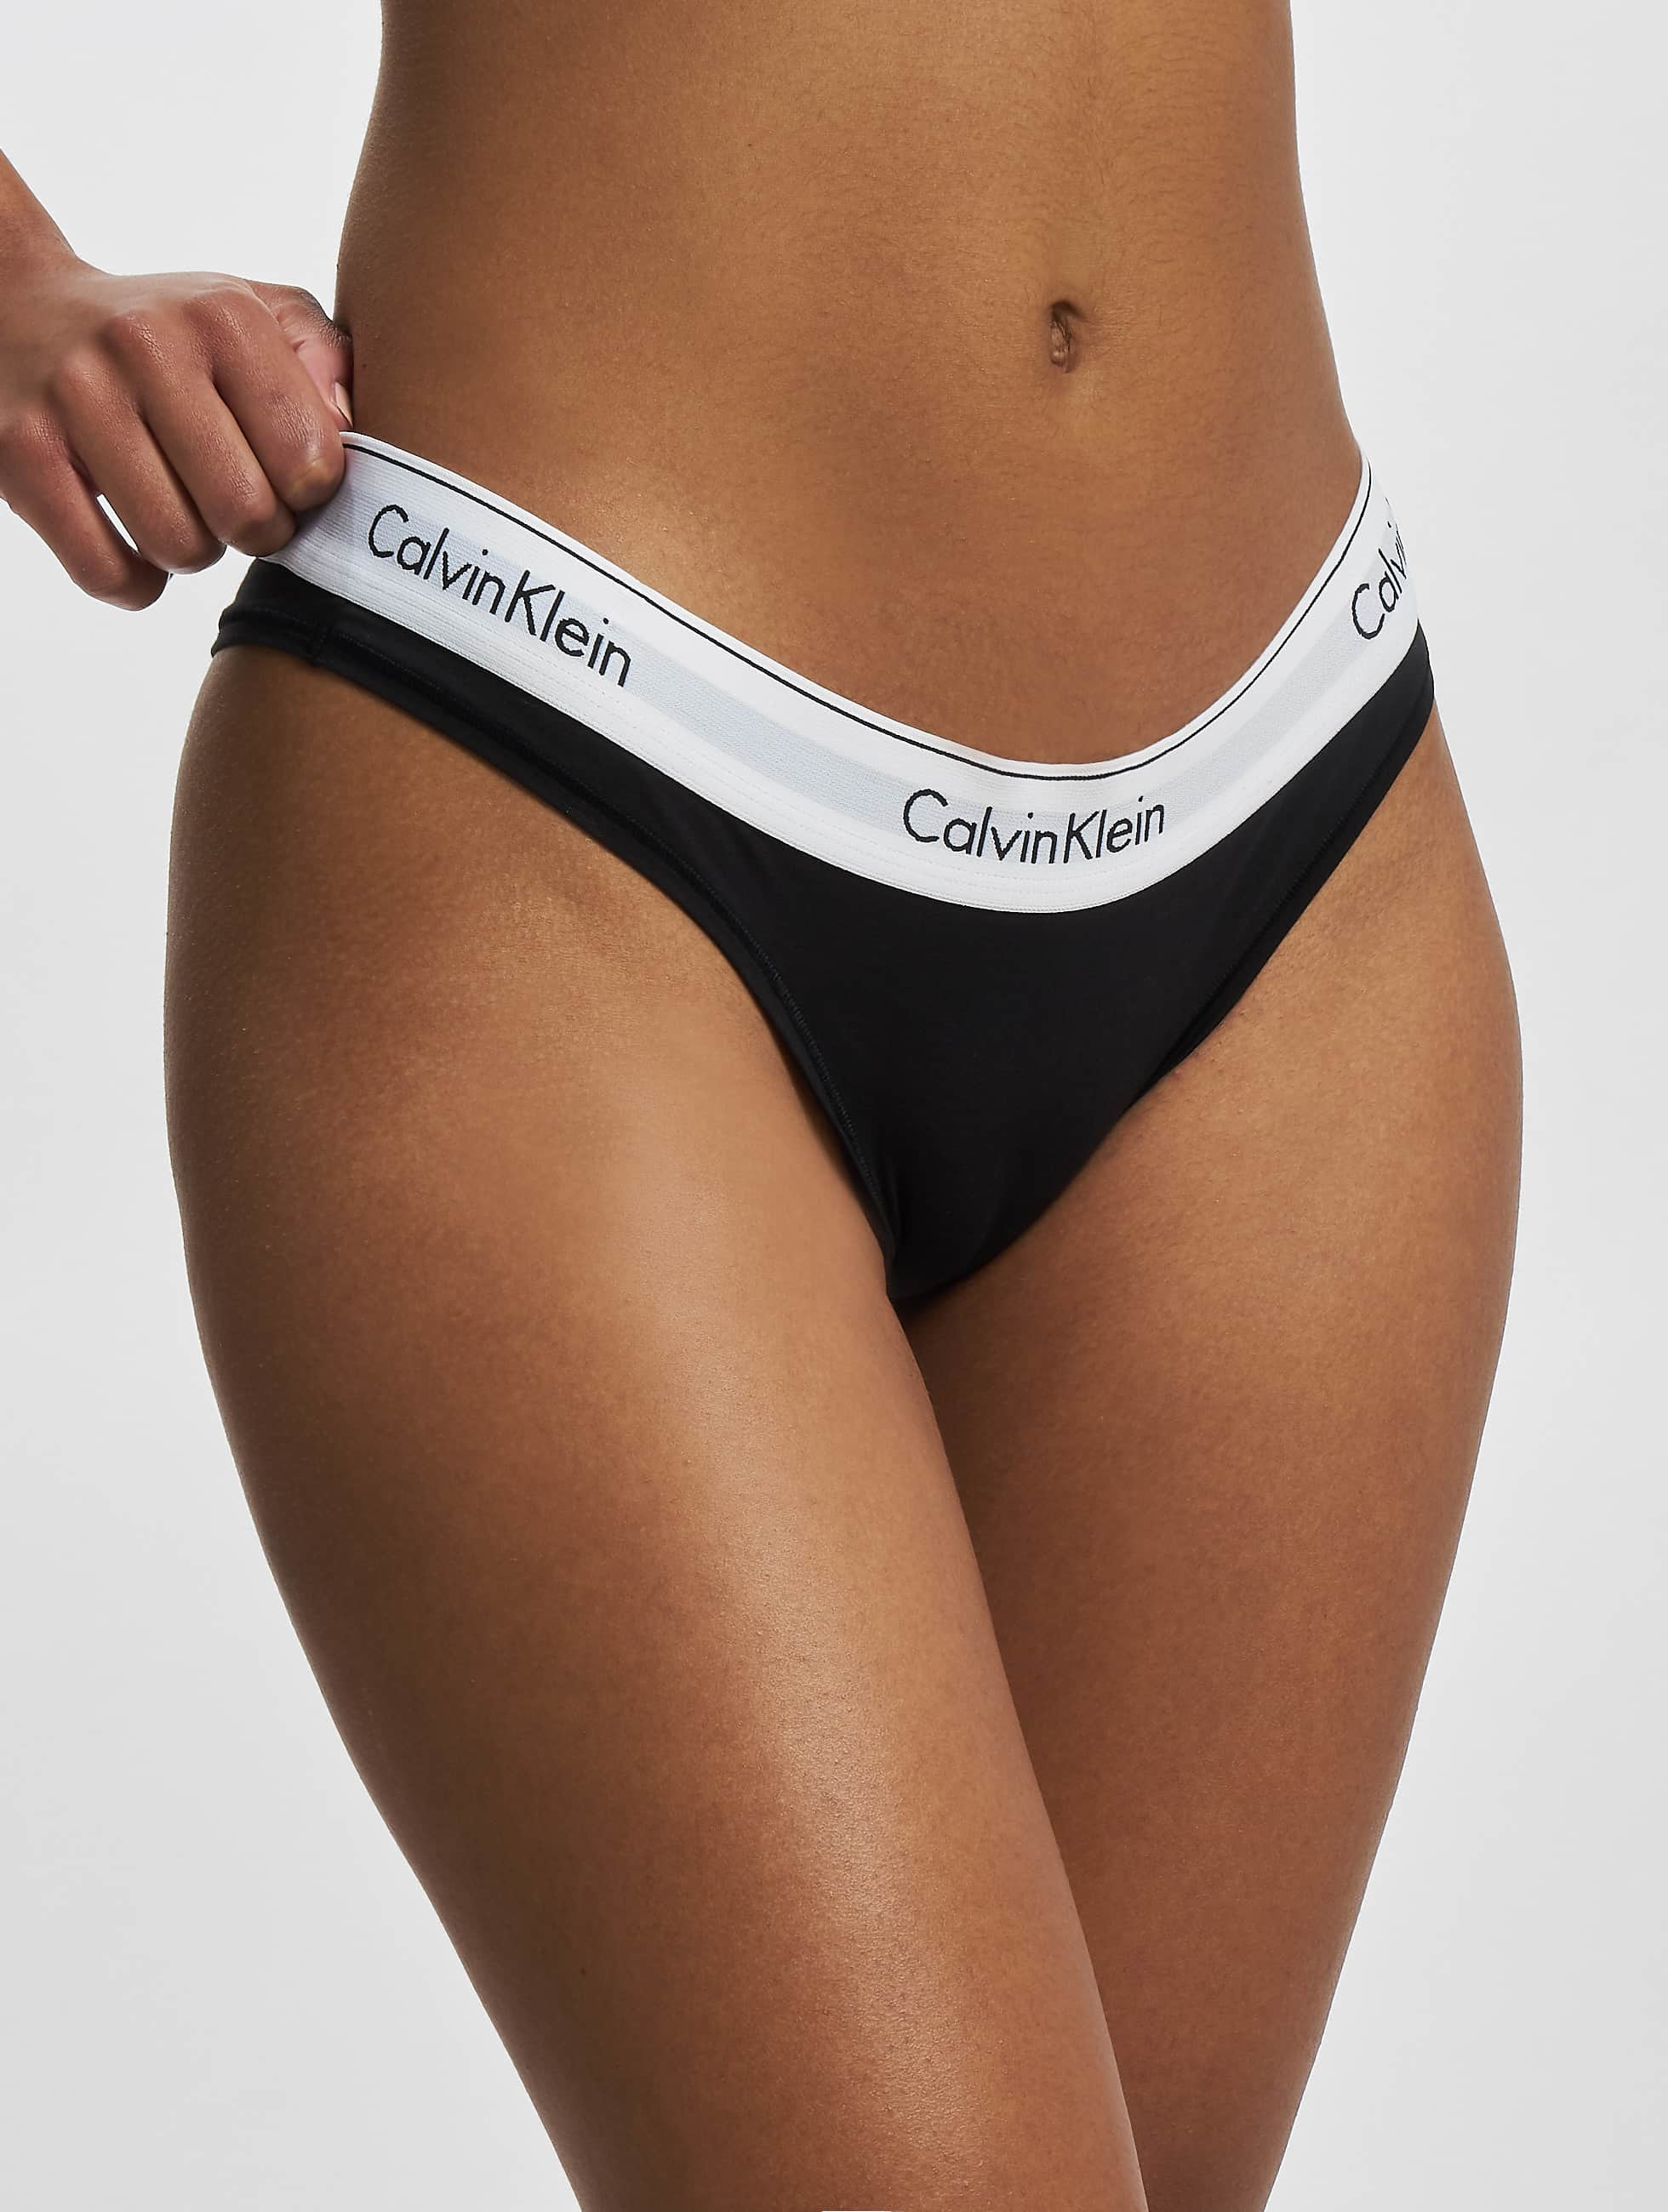 lanthaan landbouw Brutaal Calvin Klein Ondergoed / Badmode / ondergoed Underwear Brazilian in zwart  972280